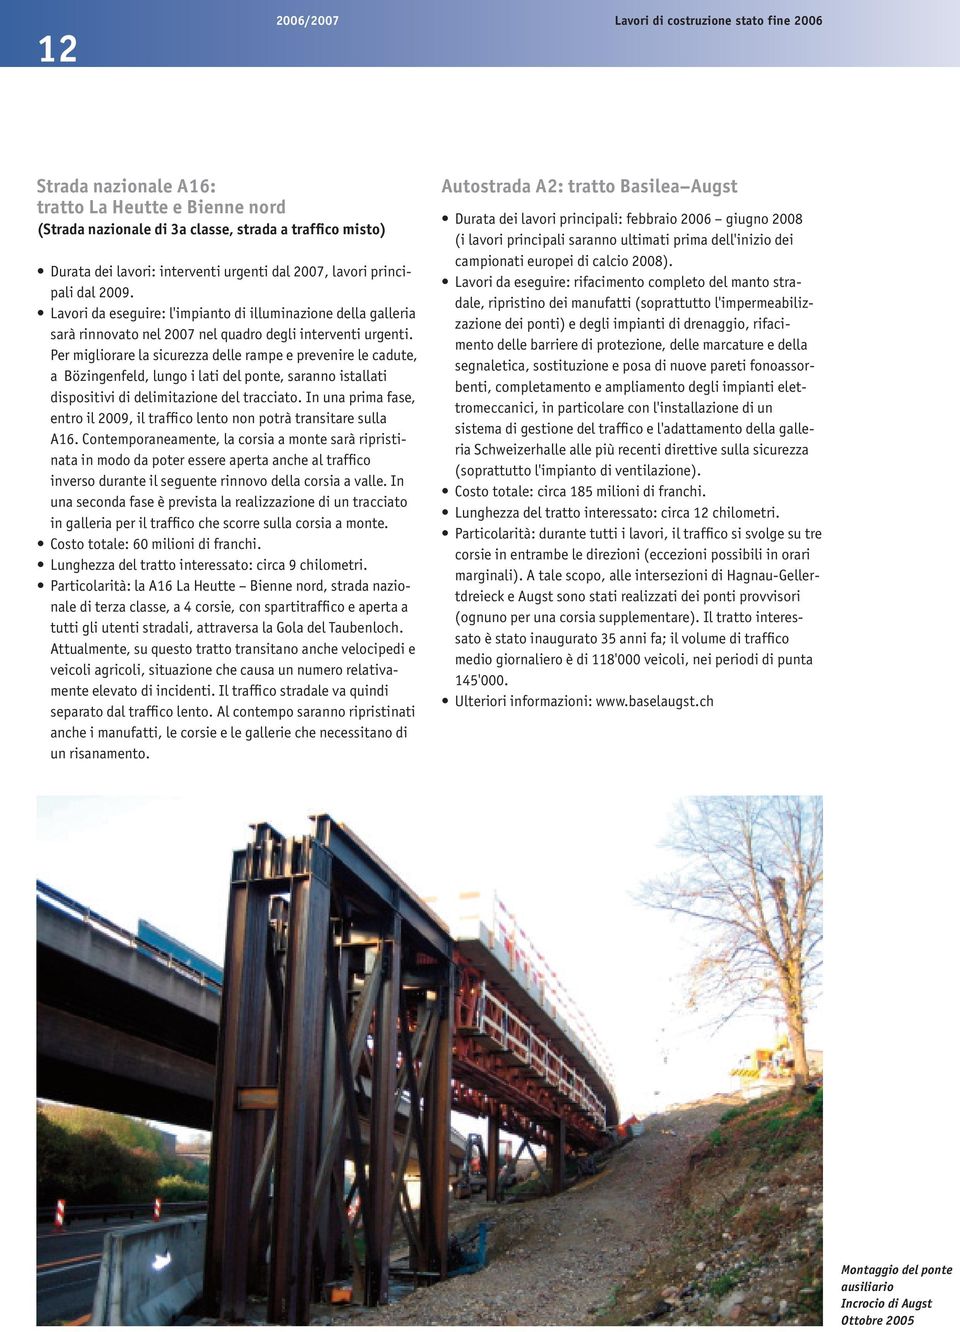 Per migliorare la sicurezza delle rampe e prevenire le cadute, a Bözingenfeld, lungo i lati del ponte, saranno istallati dispositivi di delimitazione del tracciato.